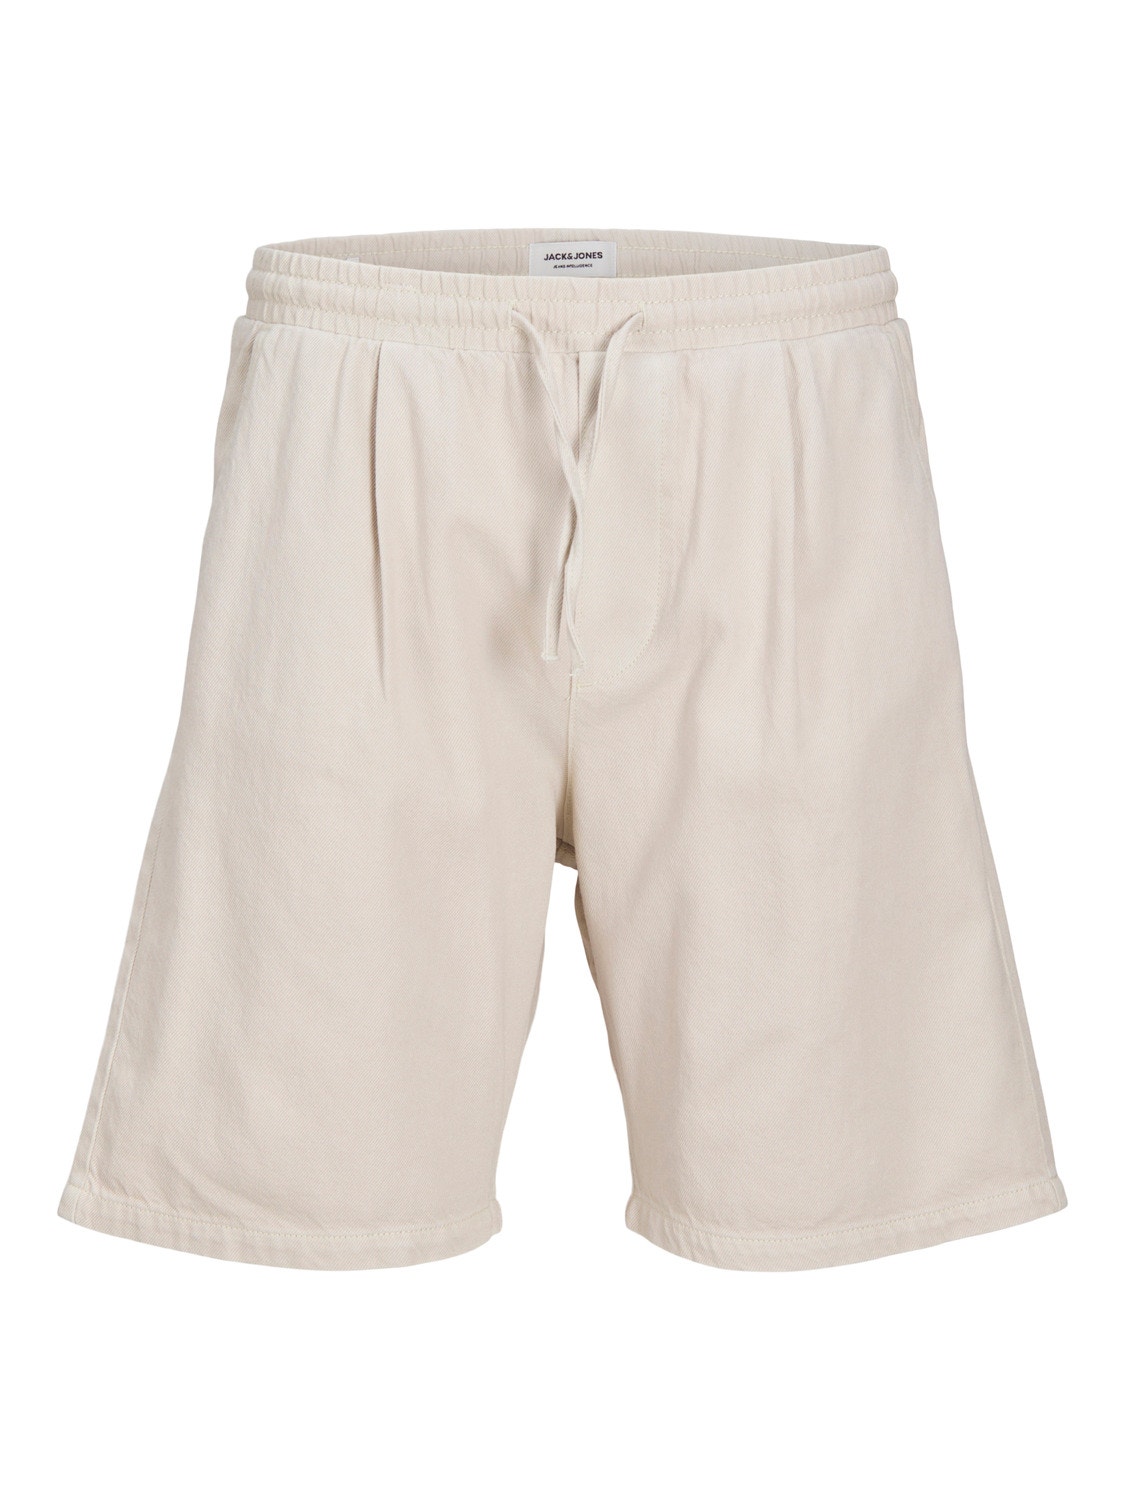 Jack & Jones Loose Fit Shorts -Ecru - 12250090